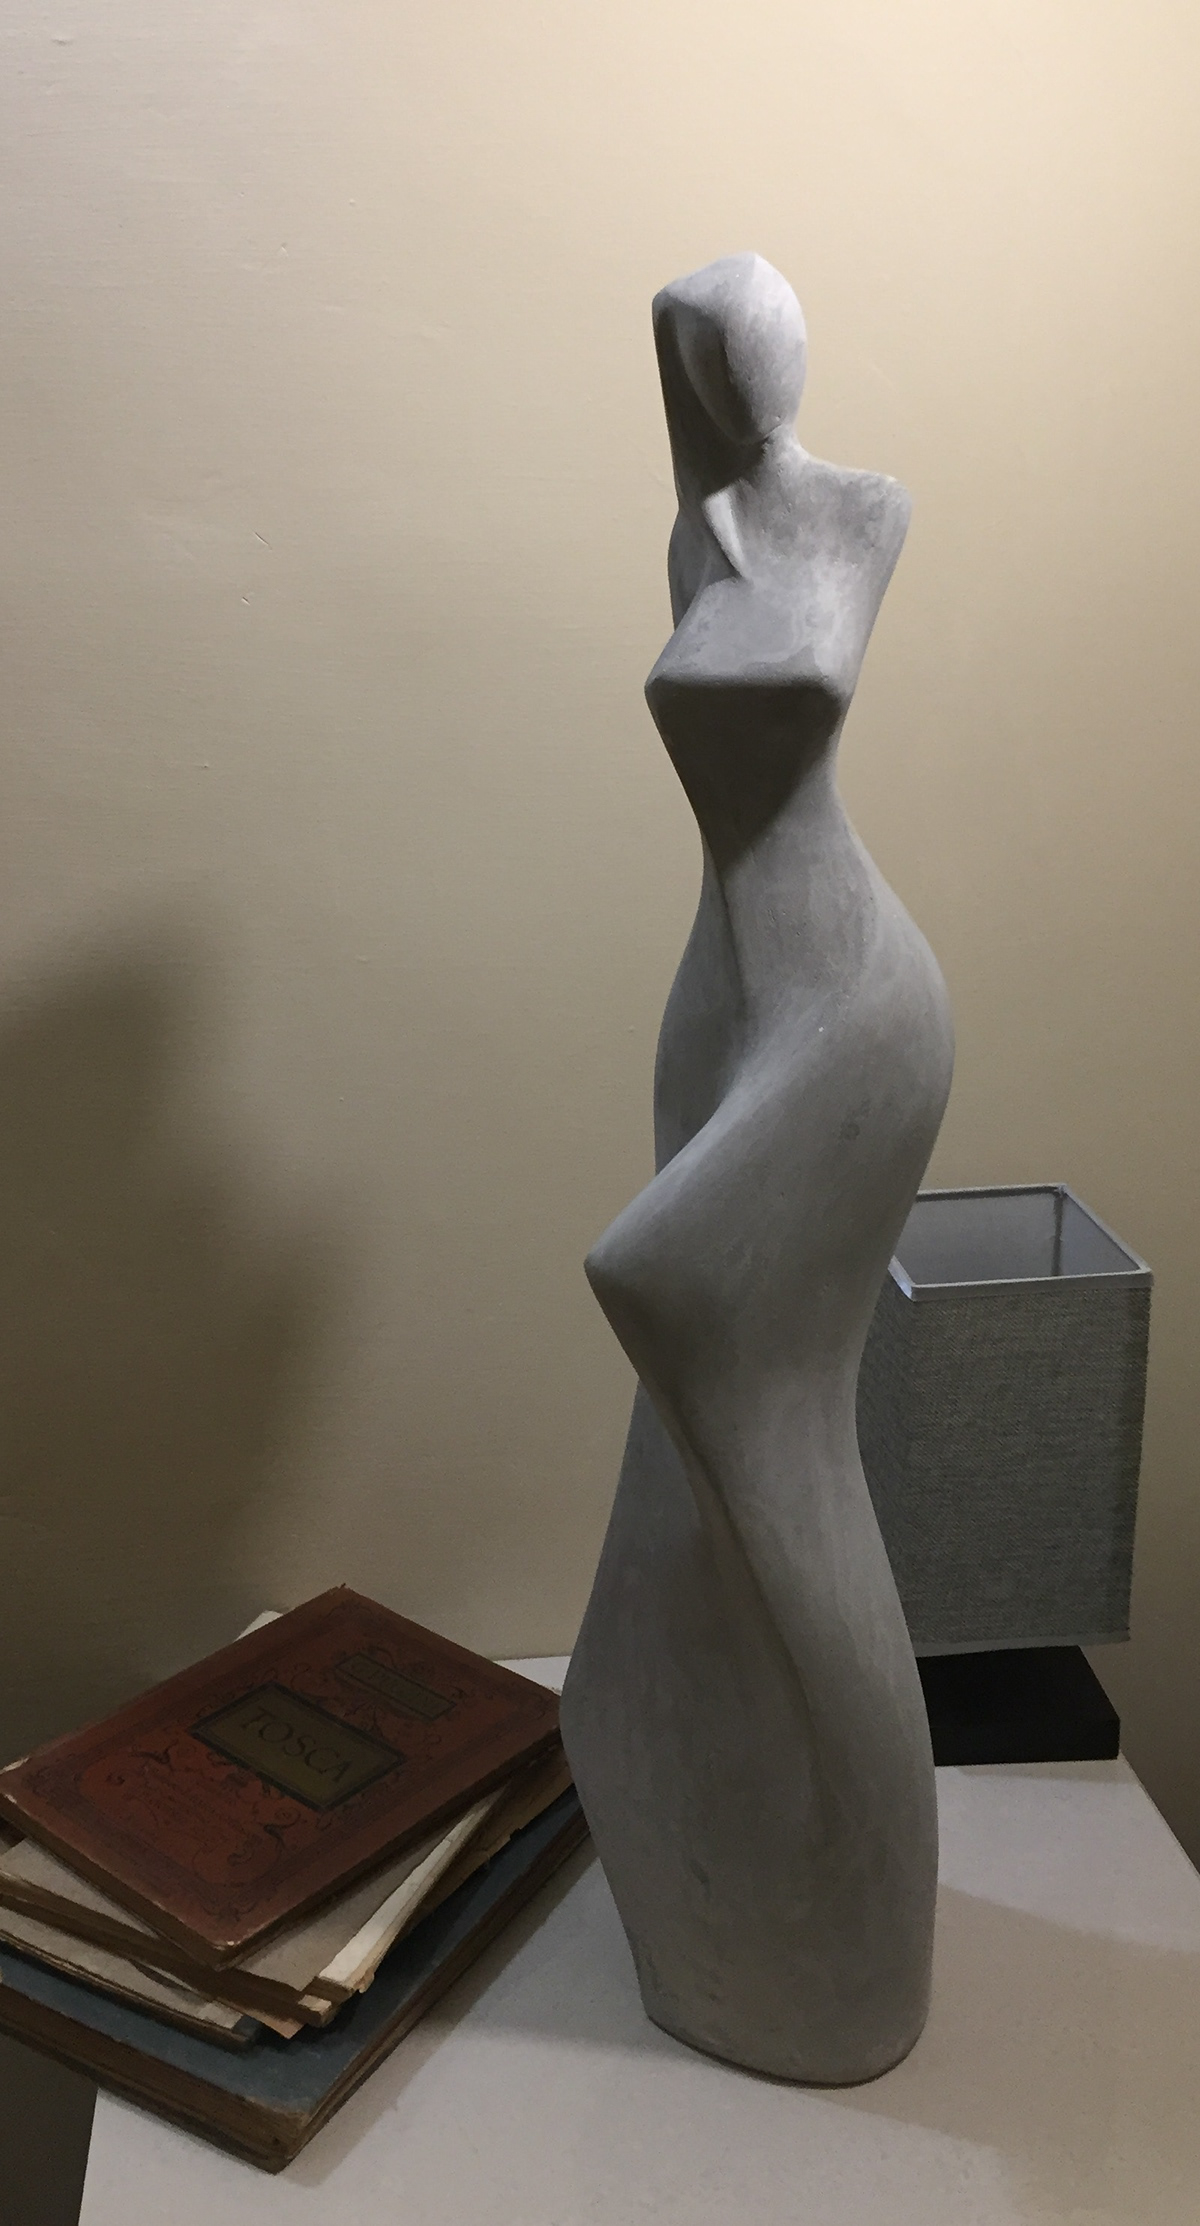 Female figurative - abstract form in concrete - Clark Camilleri 2021